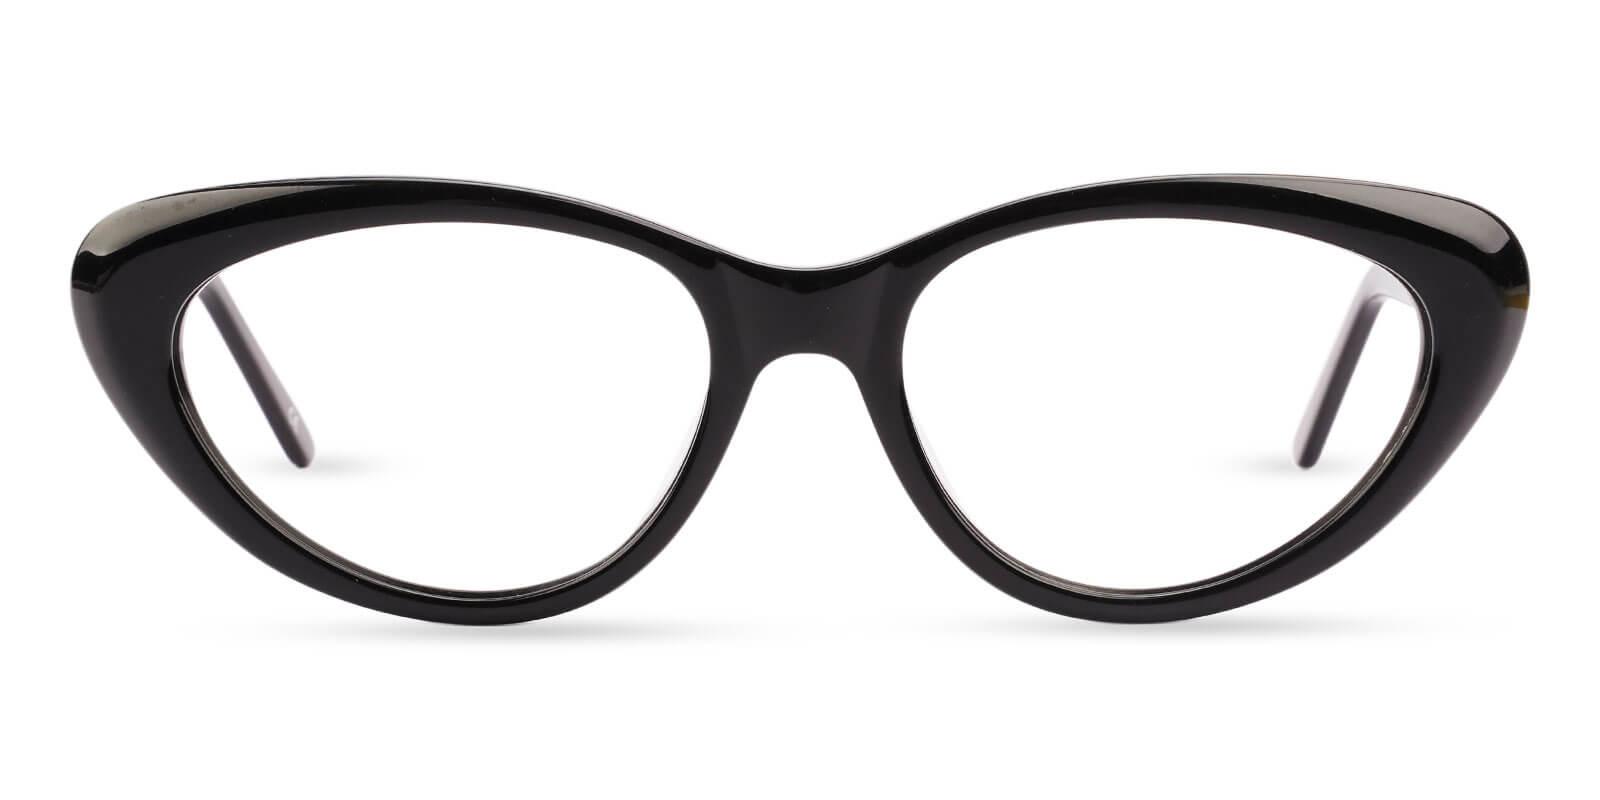 Irene Black Acetate Eyeglasses , SpringHinges , UniversalBridgeFit Frames from ABBE Glasses